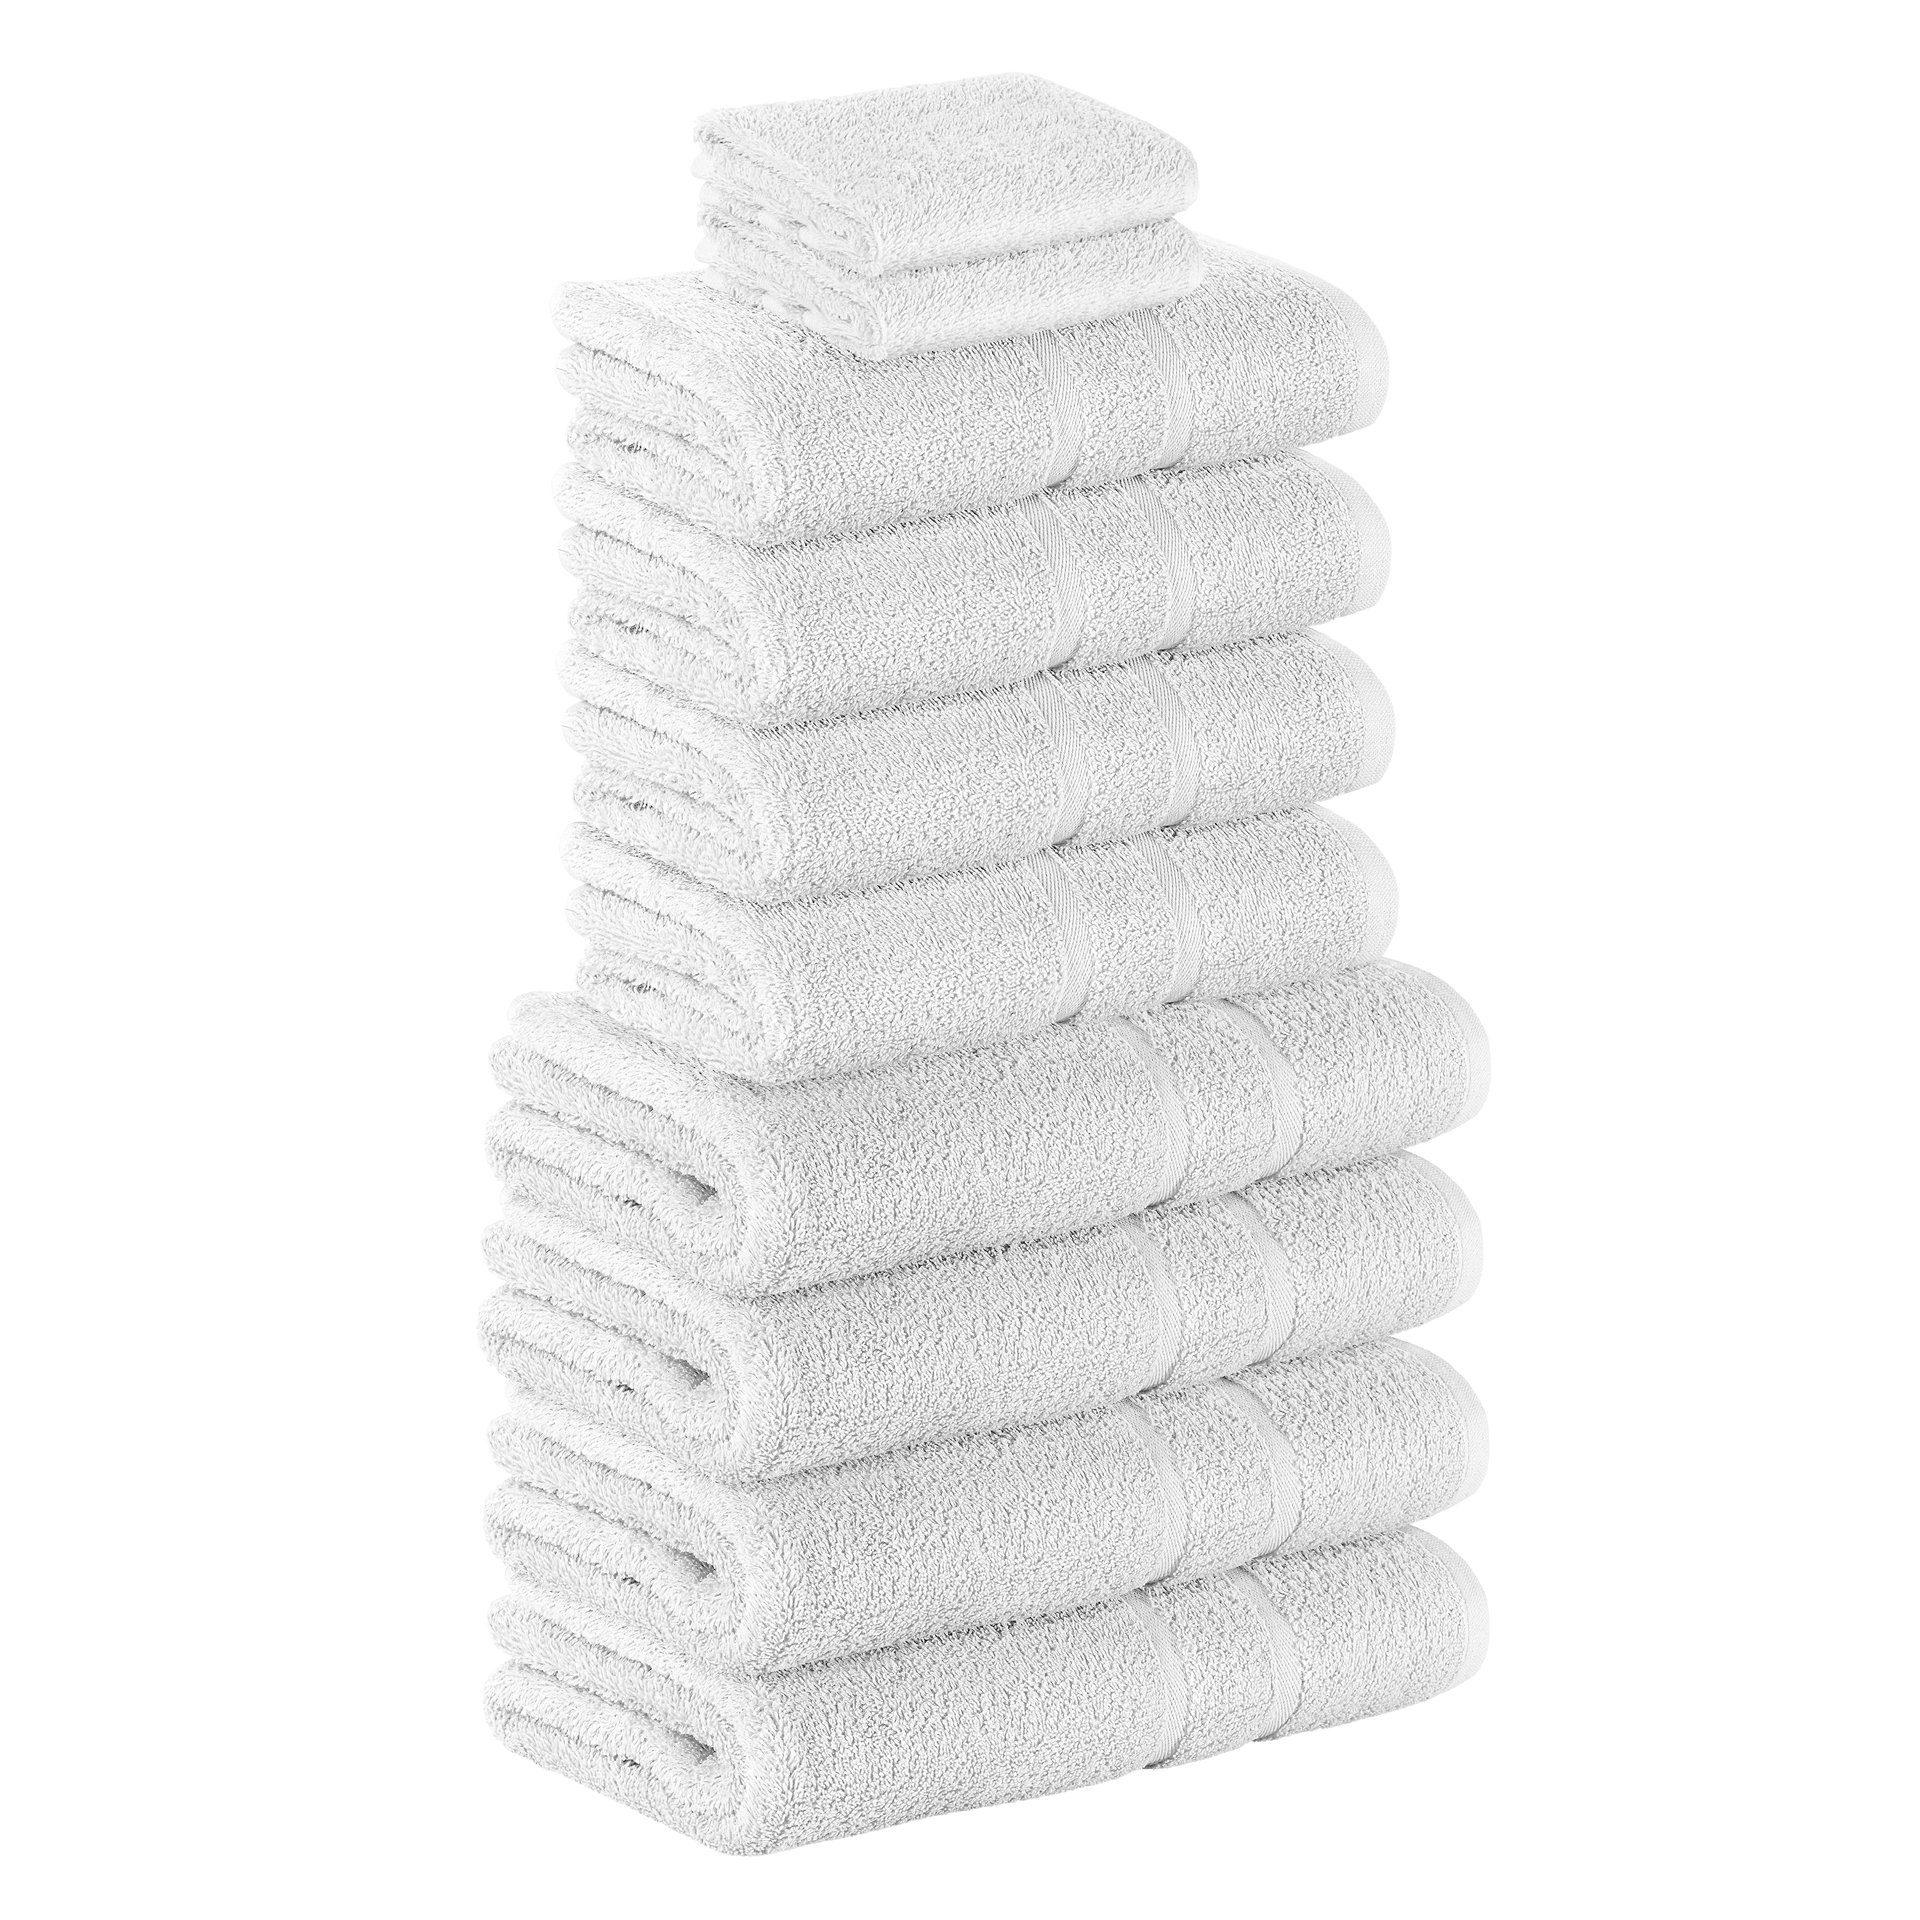 StickandShine Handtuch Set 2x Gästehandtuch 4x Handtücher 4x Duschtücher als SET in verschiedenen Farben (10 Teilig) 100% Baumwolle 500 GSM Frottee 10er Handtuch Pack, (Spar-set), 100% Baumwolle 500 GSM Weiß